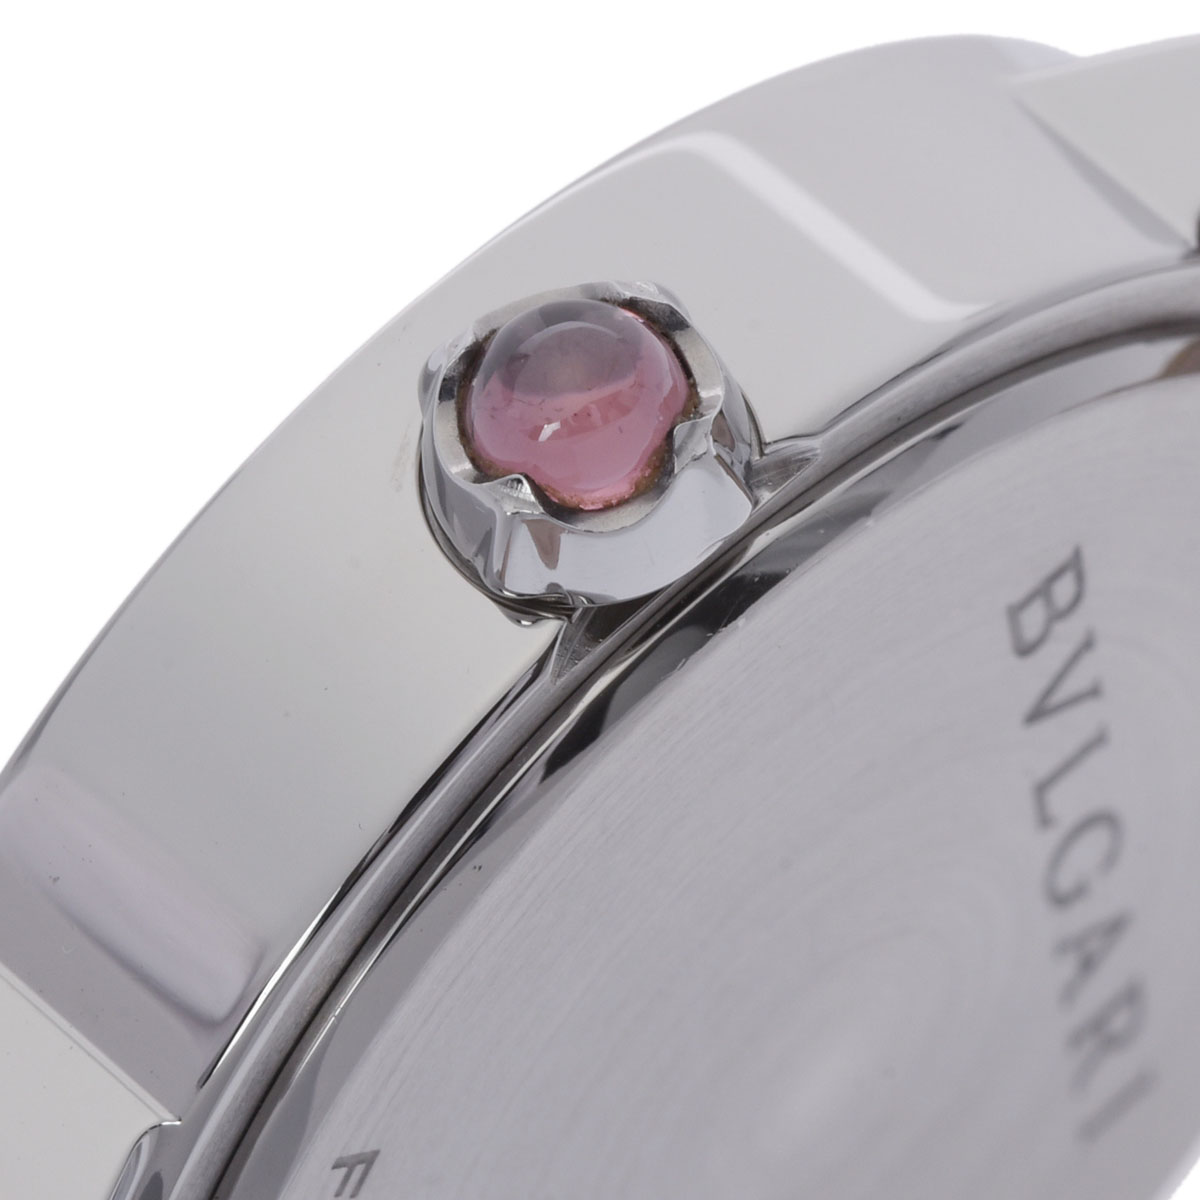 Bvlgari White Diamonds Stainless Steel Bvlgari Bvlgari BBL33WSL Women's Wristwatch 33 Mm